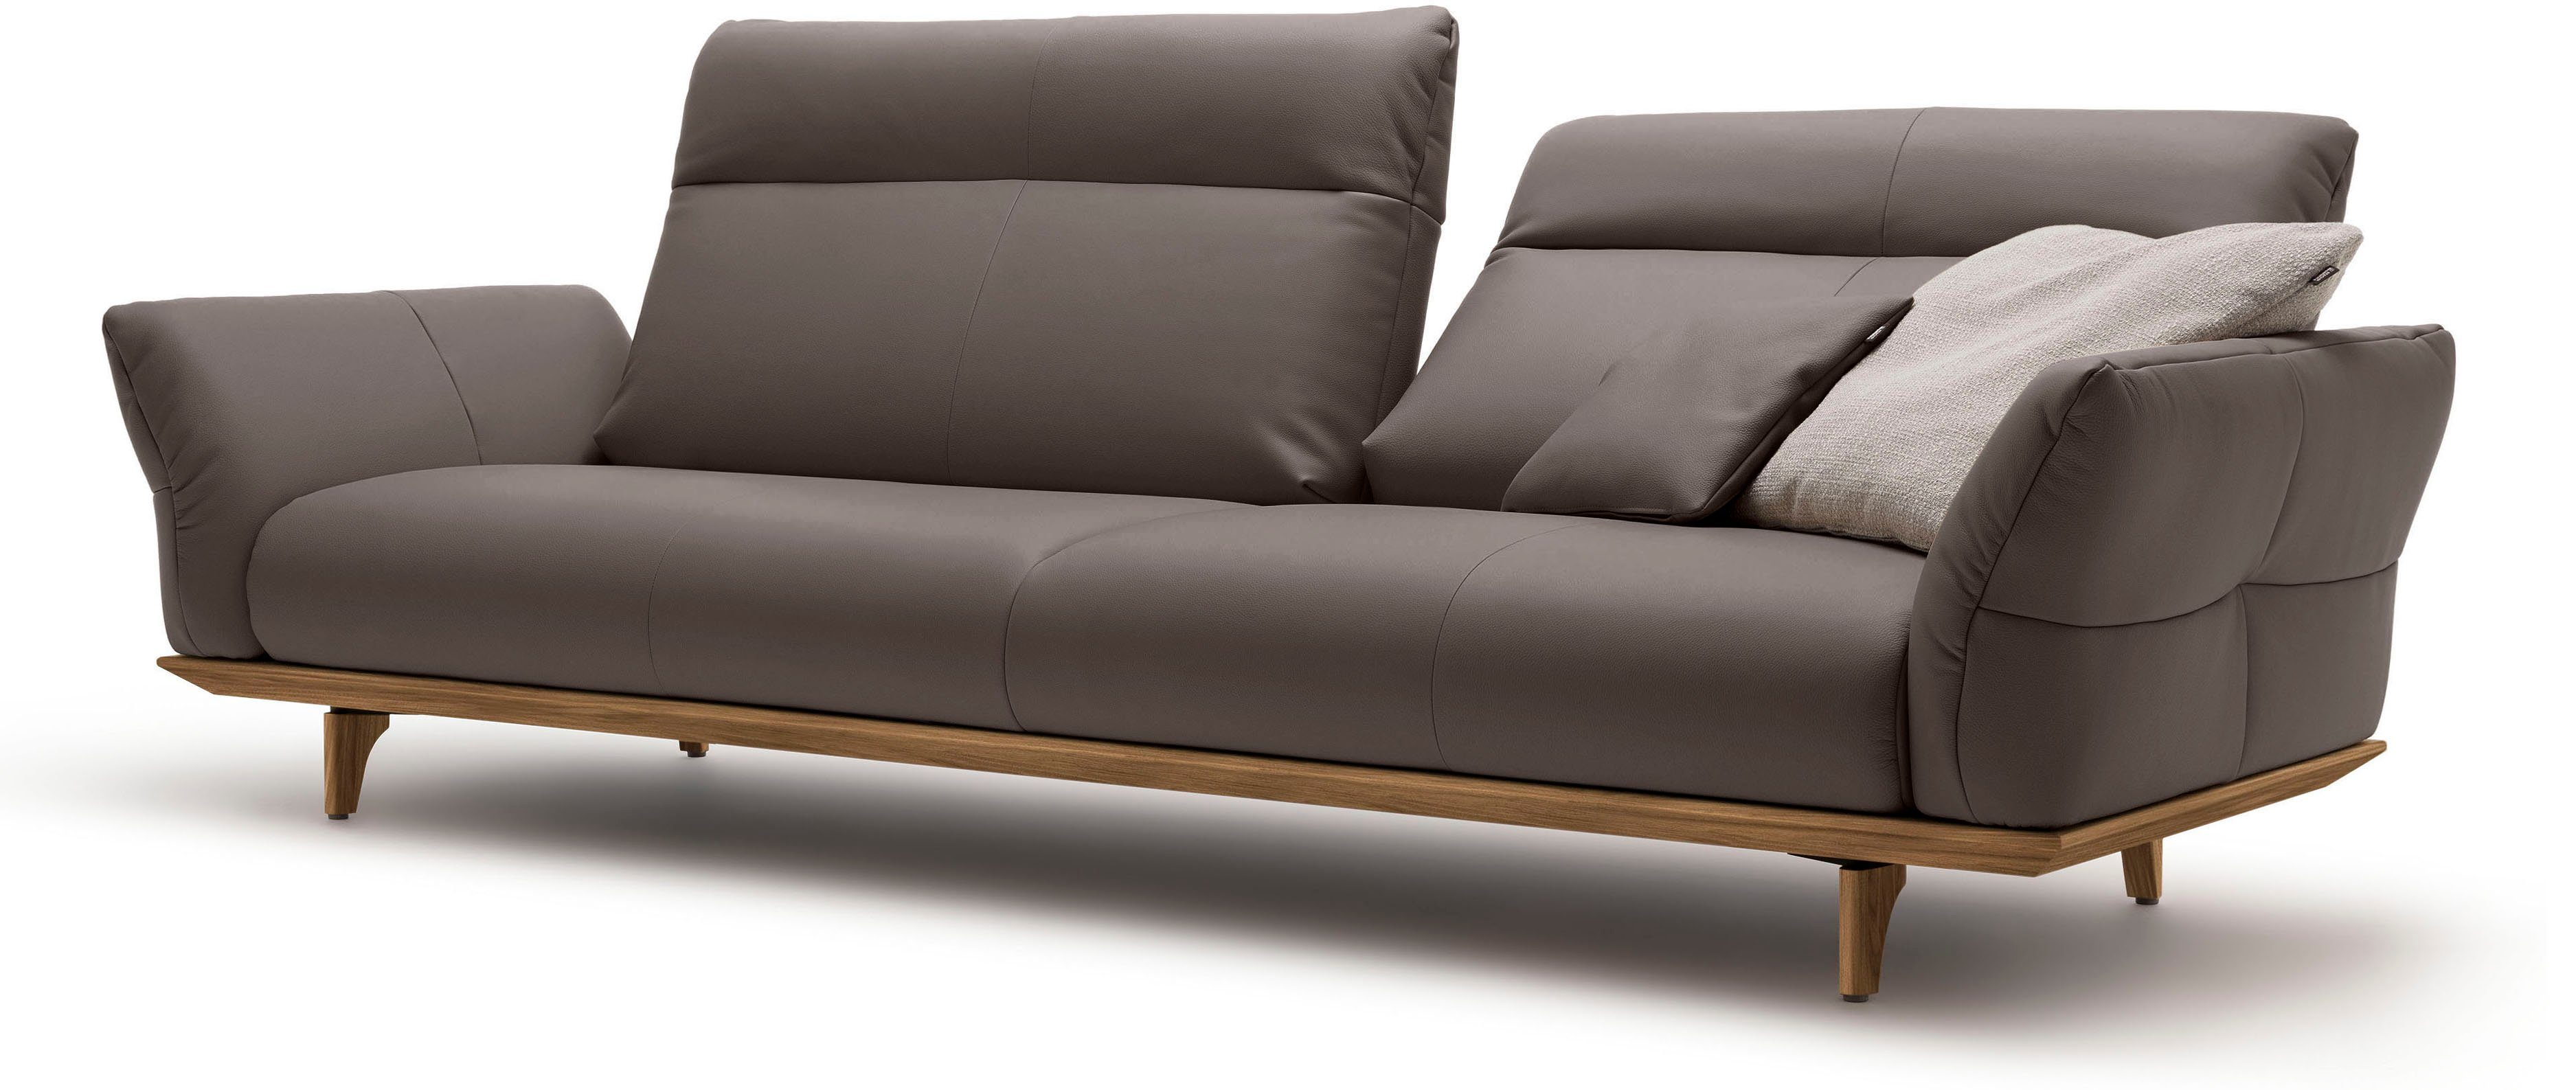 hülsta sofa Breite in 4-Sitzer Sockel 248 Nussbaum, hs.460, Füße cm Nussbaum